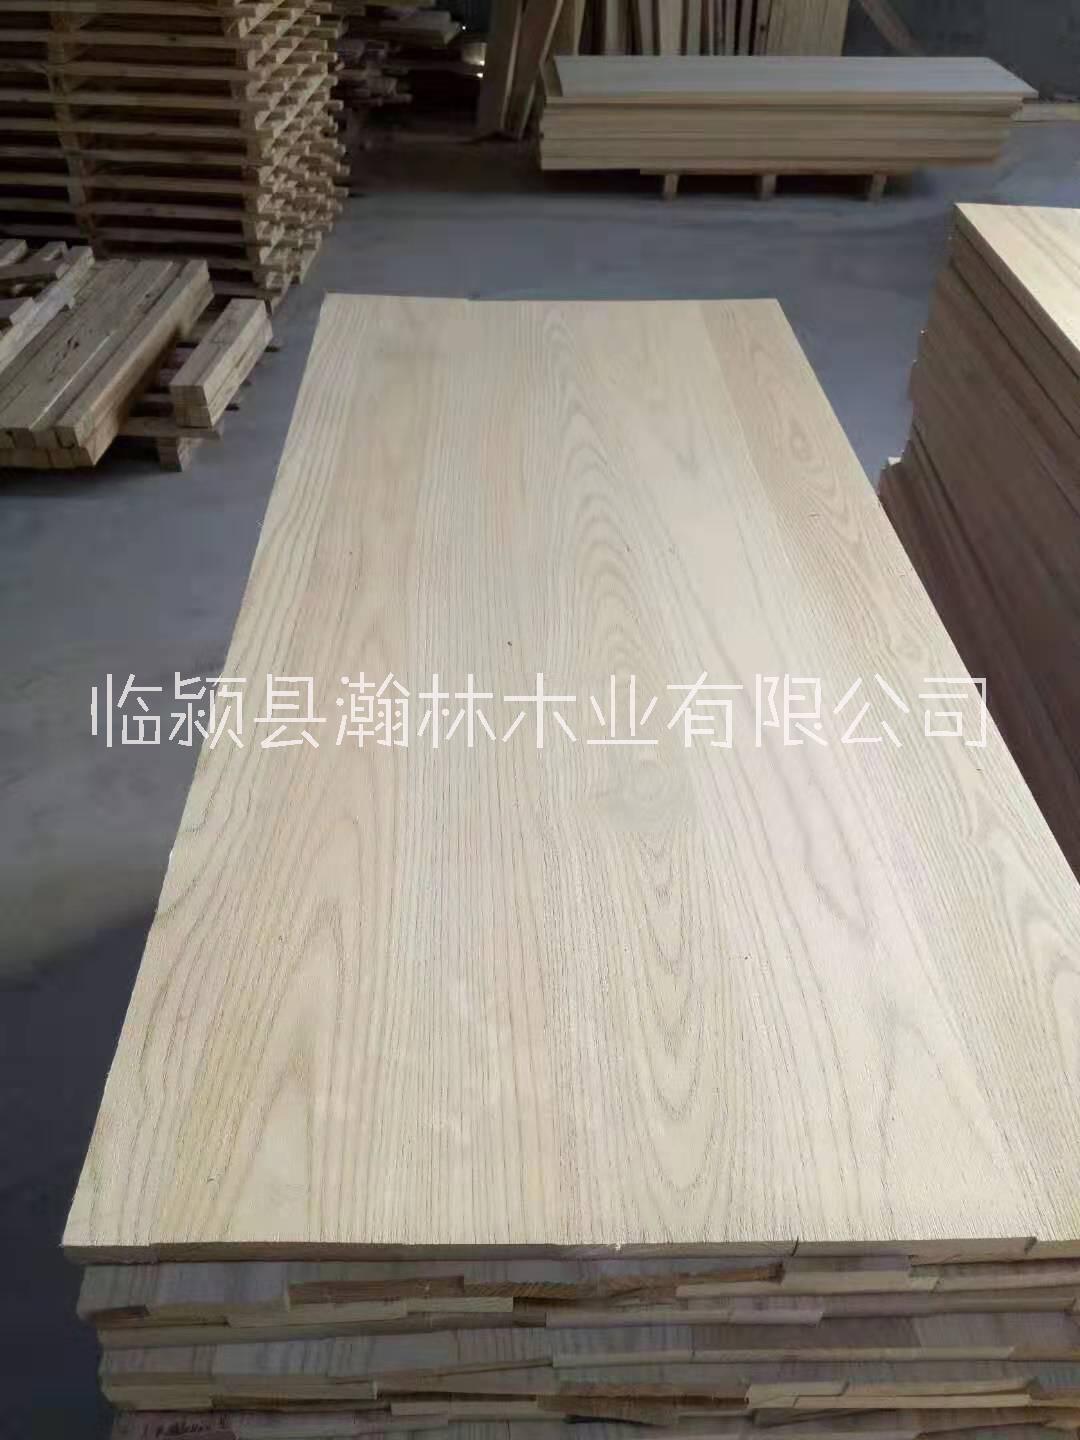 椿木拼板 河南本土板材厂家 专业来样加工木椿板材 生产实木椿木烘干家具材料图片